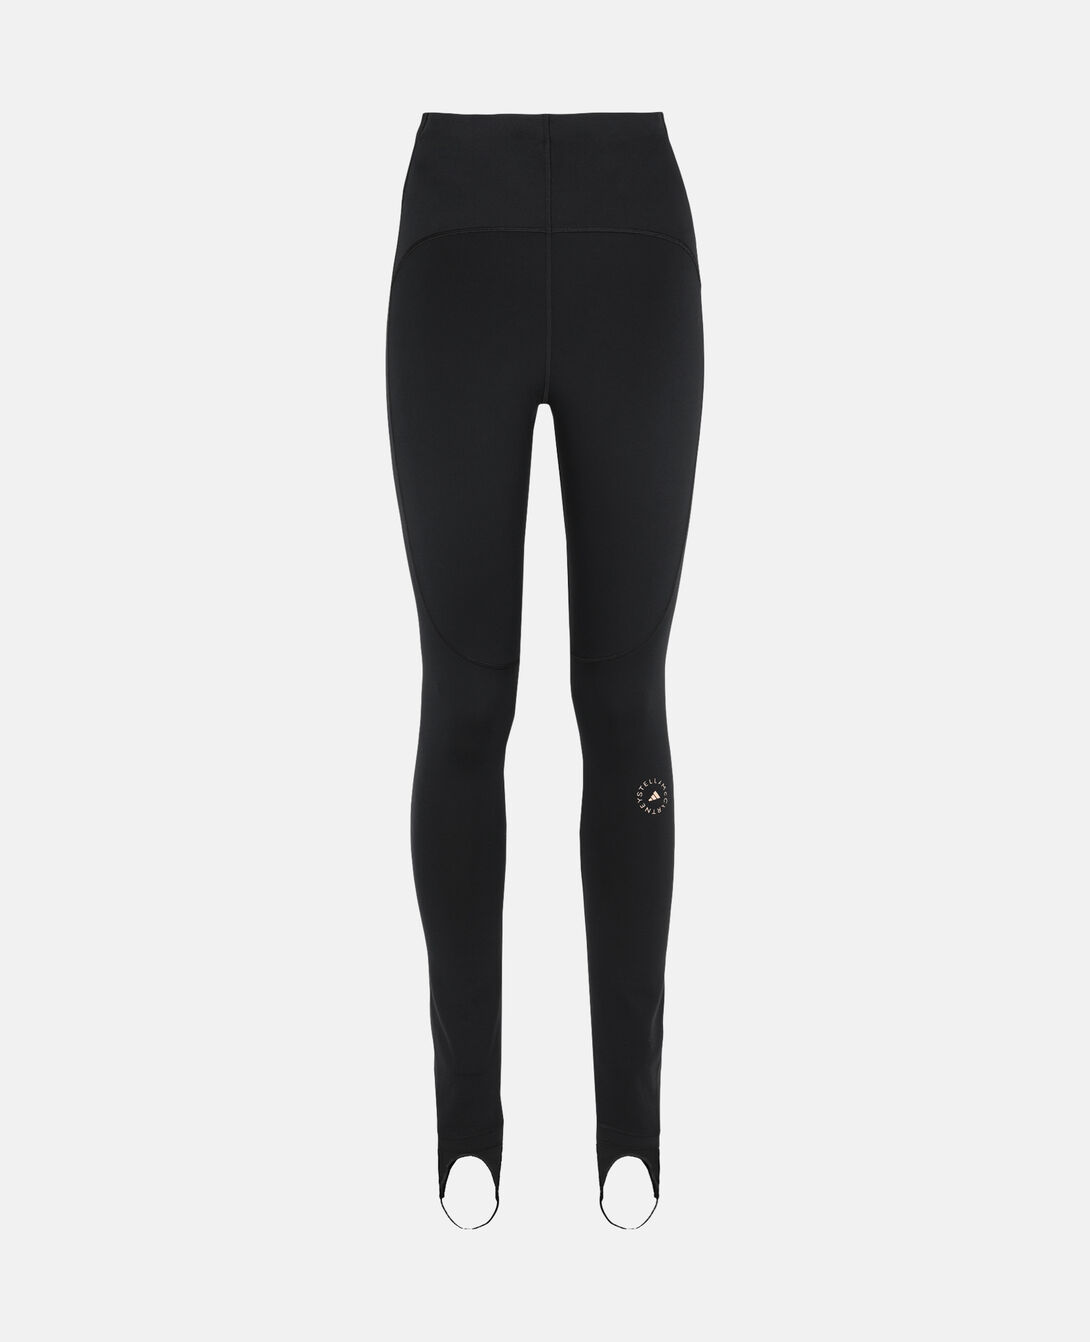 adidas by Stella McCartney TrueStrength Yoga 7/8 Tight - Grey | Women's  Yoga | adidas US